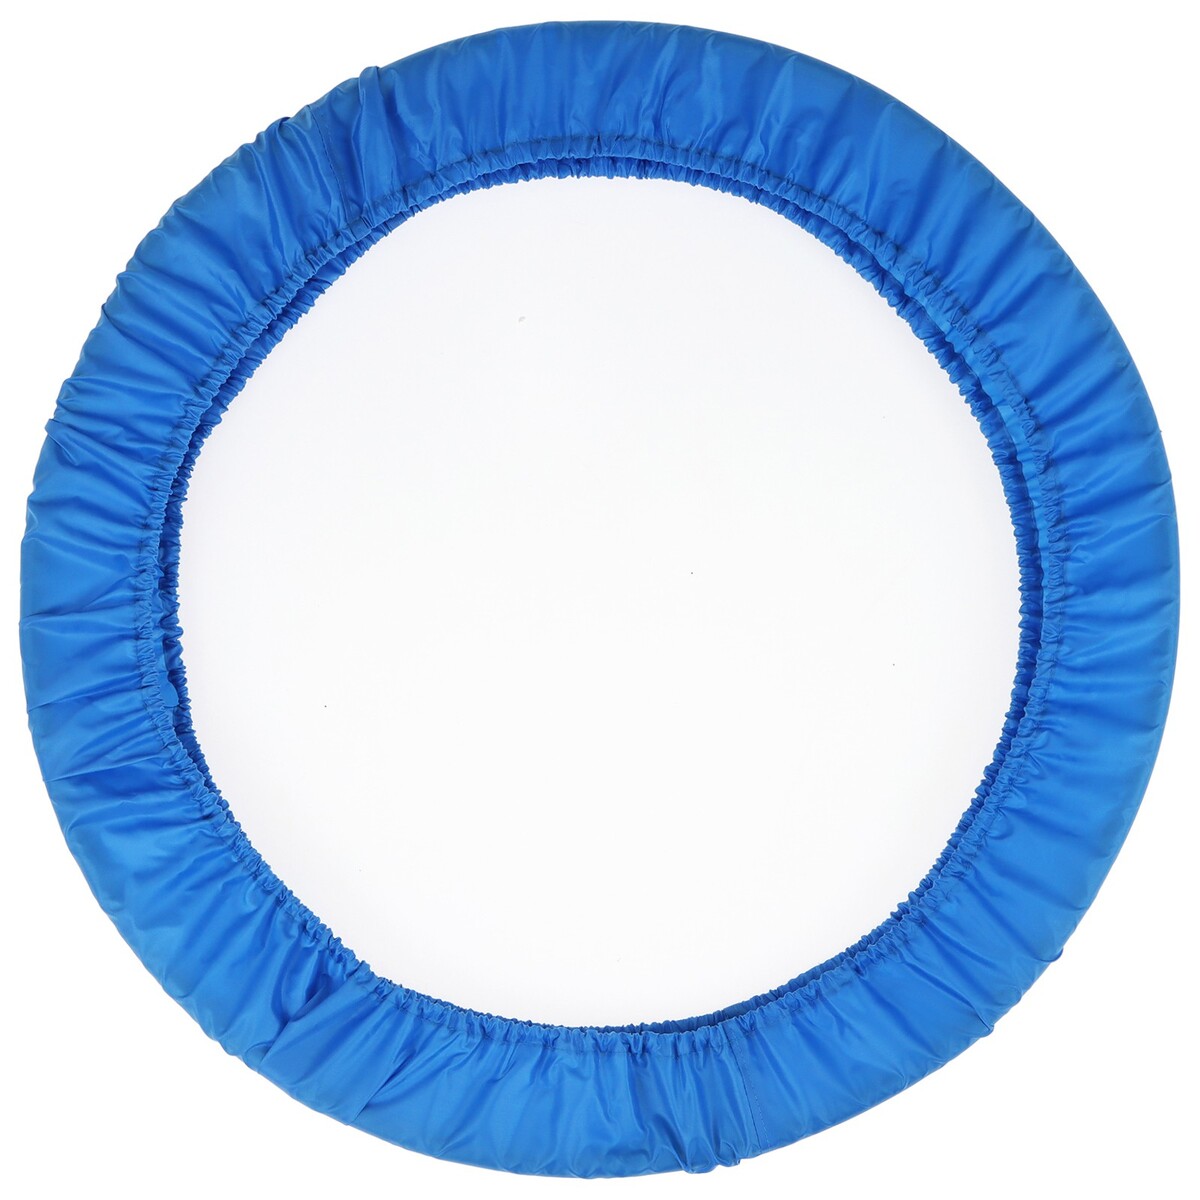 Чехол для обруча, диаметр 70 см, цвет голубой Grace Dance